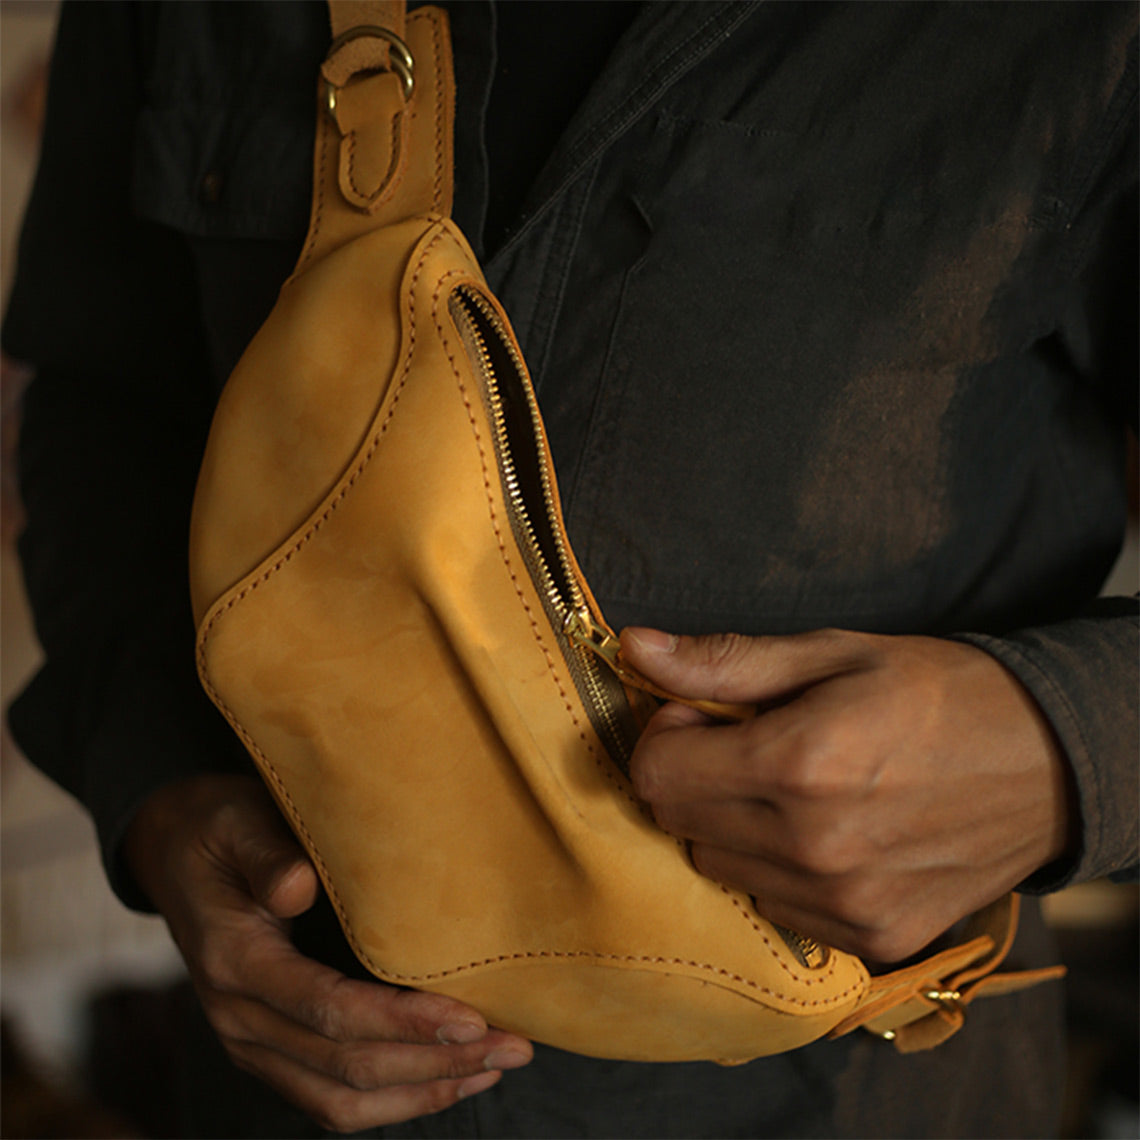 POPSEWING Designer Catfish Bag DIY Kit - Make A Belt Bag at Home